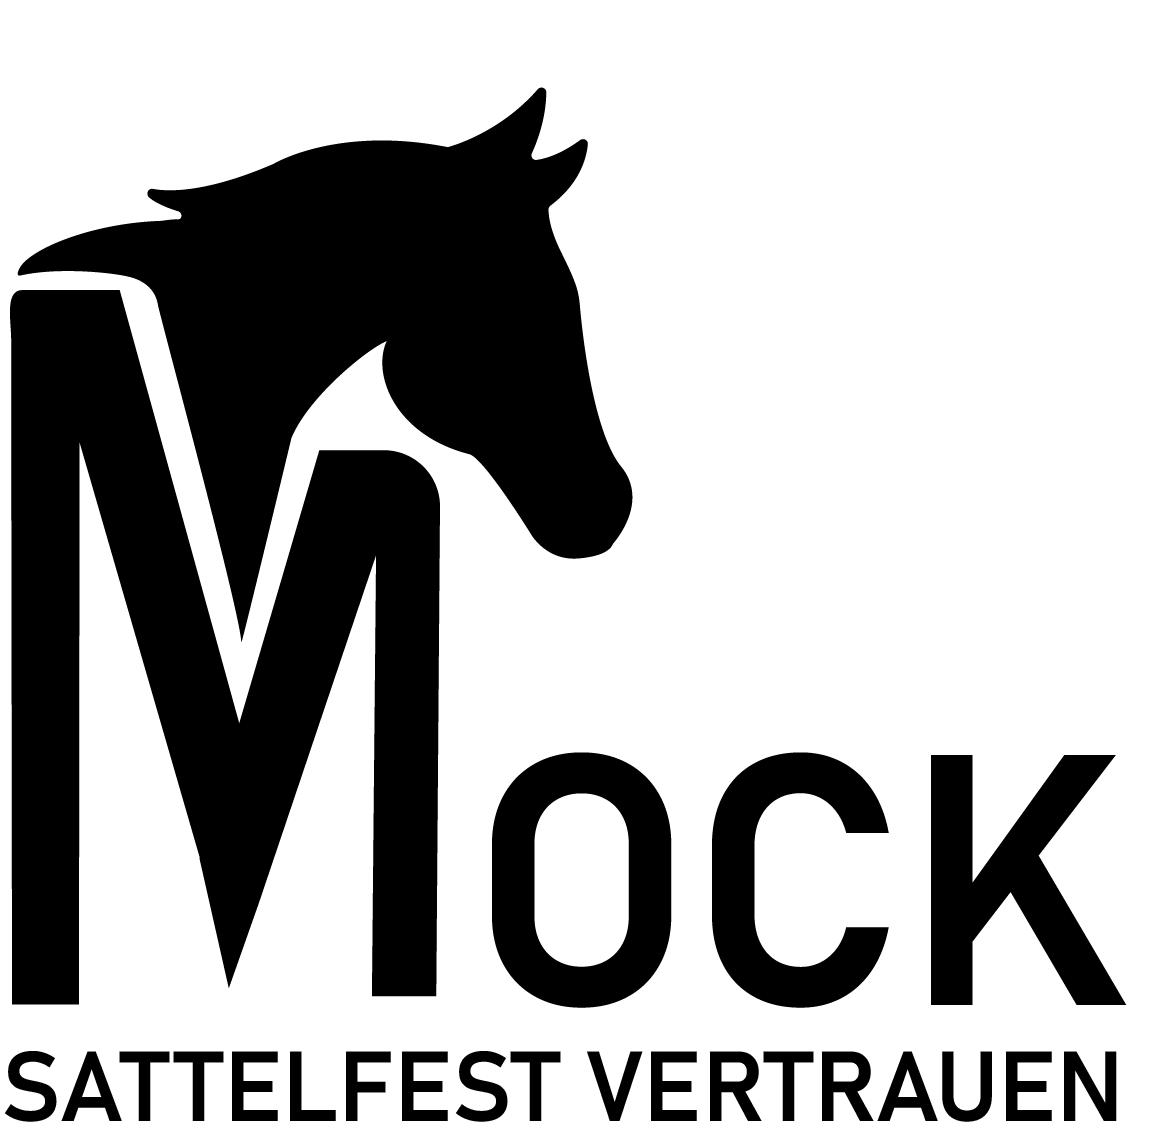 Stephanie Mock | Sattelfest vertrauen Logo